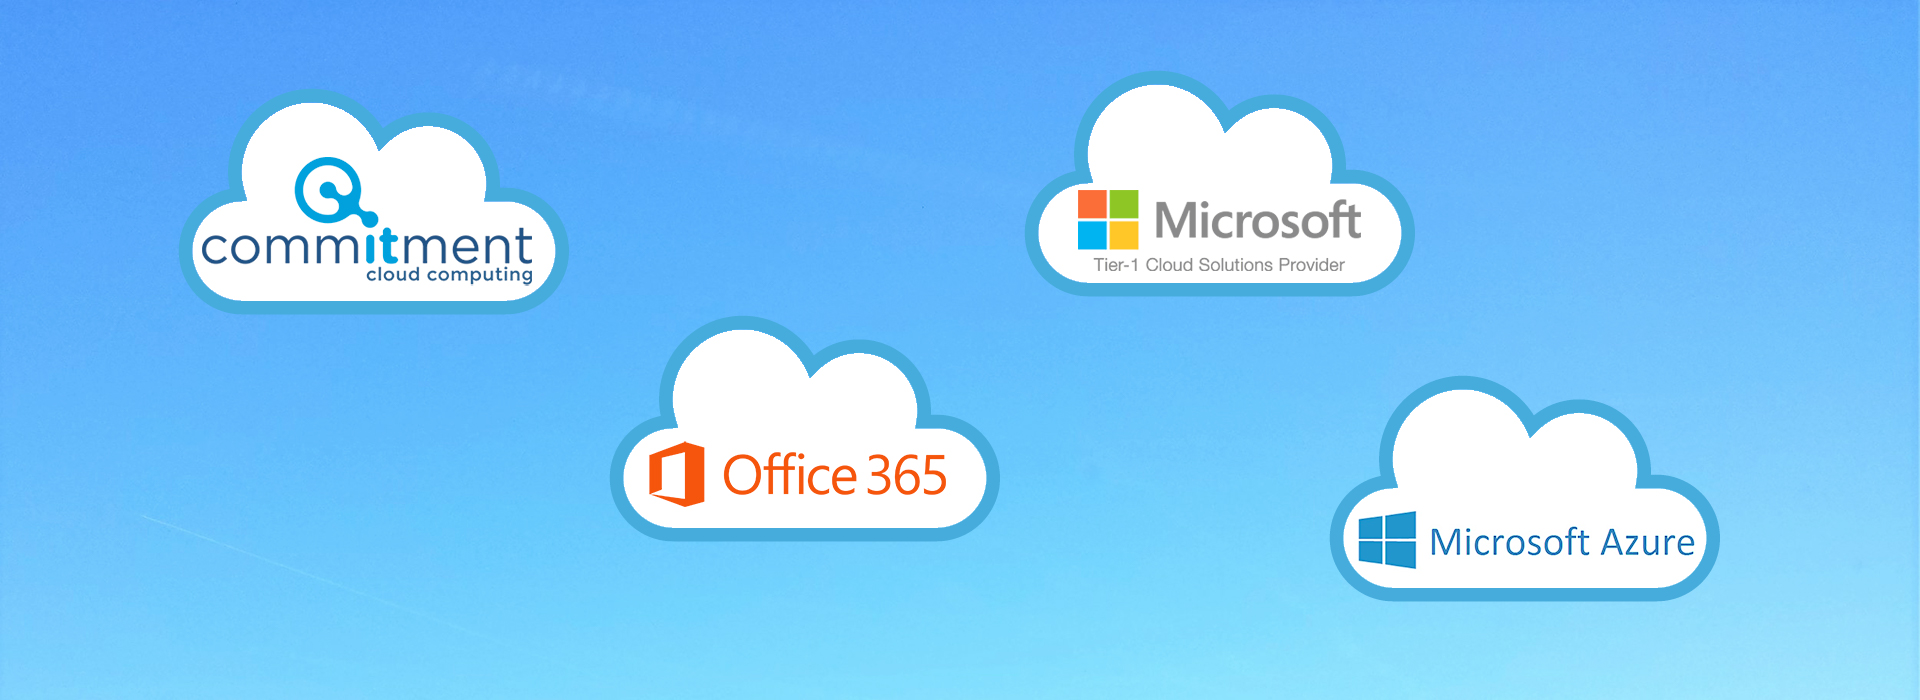 CommITment is Microsoft Tier 1 Cloud Solutions Provider voor Office365 en Azure